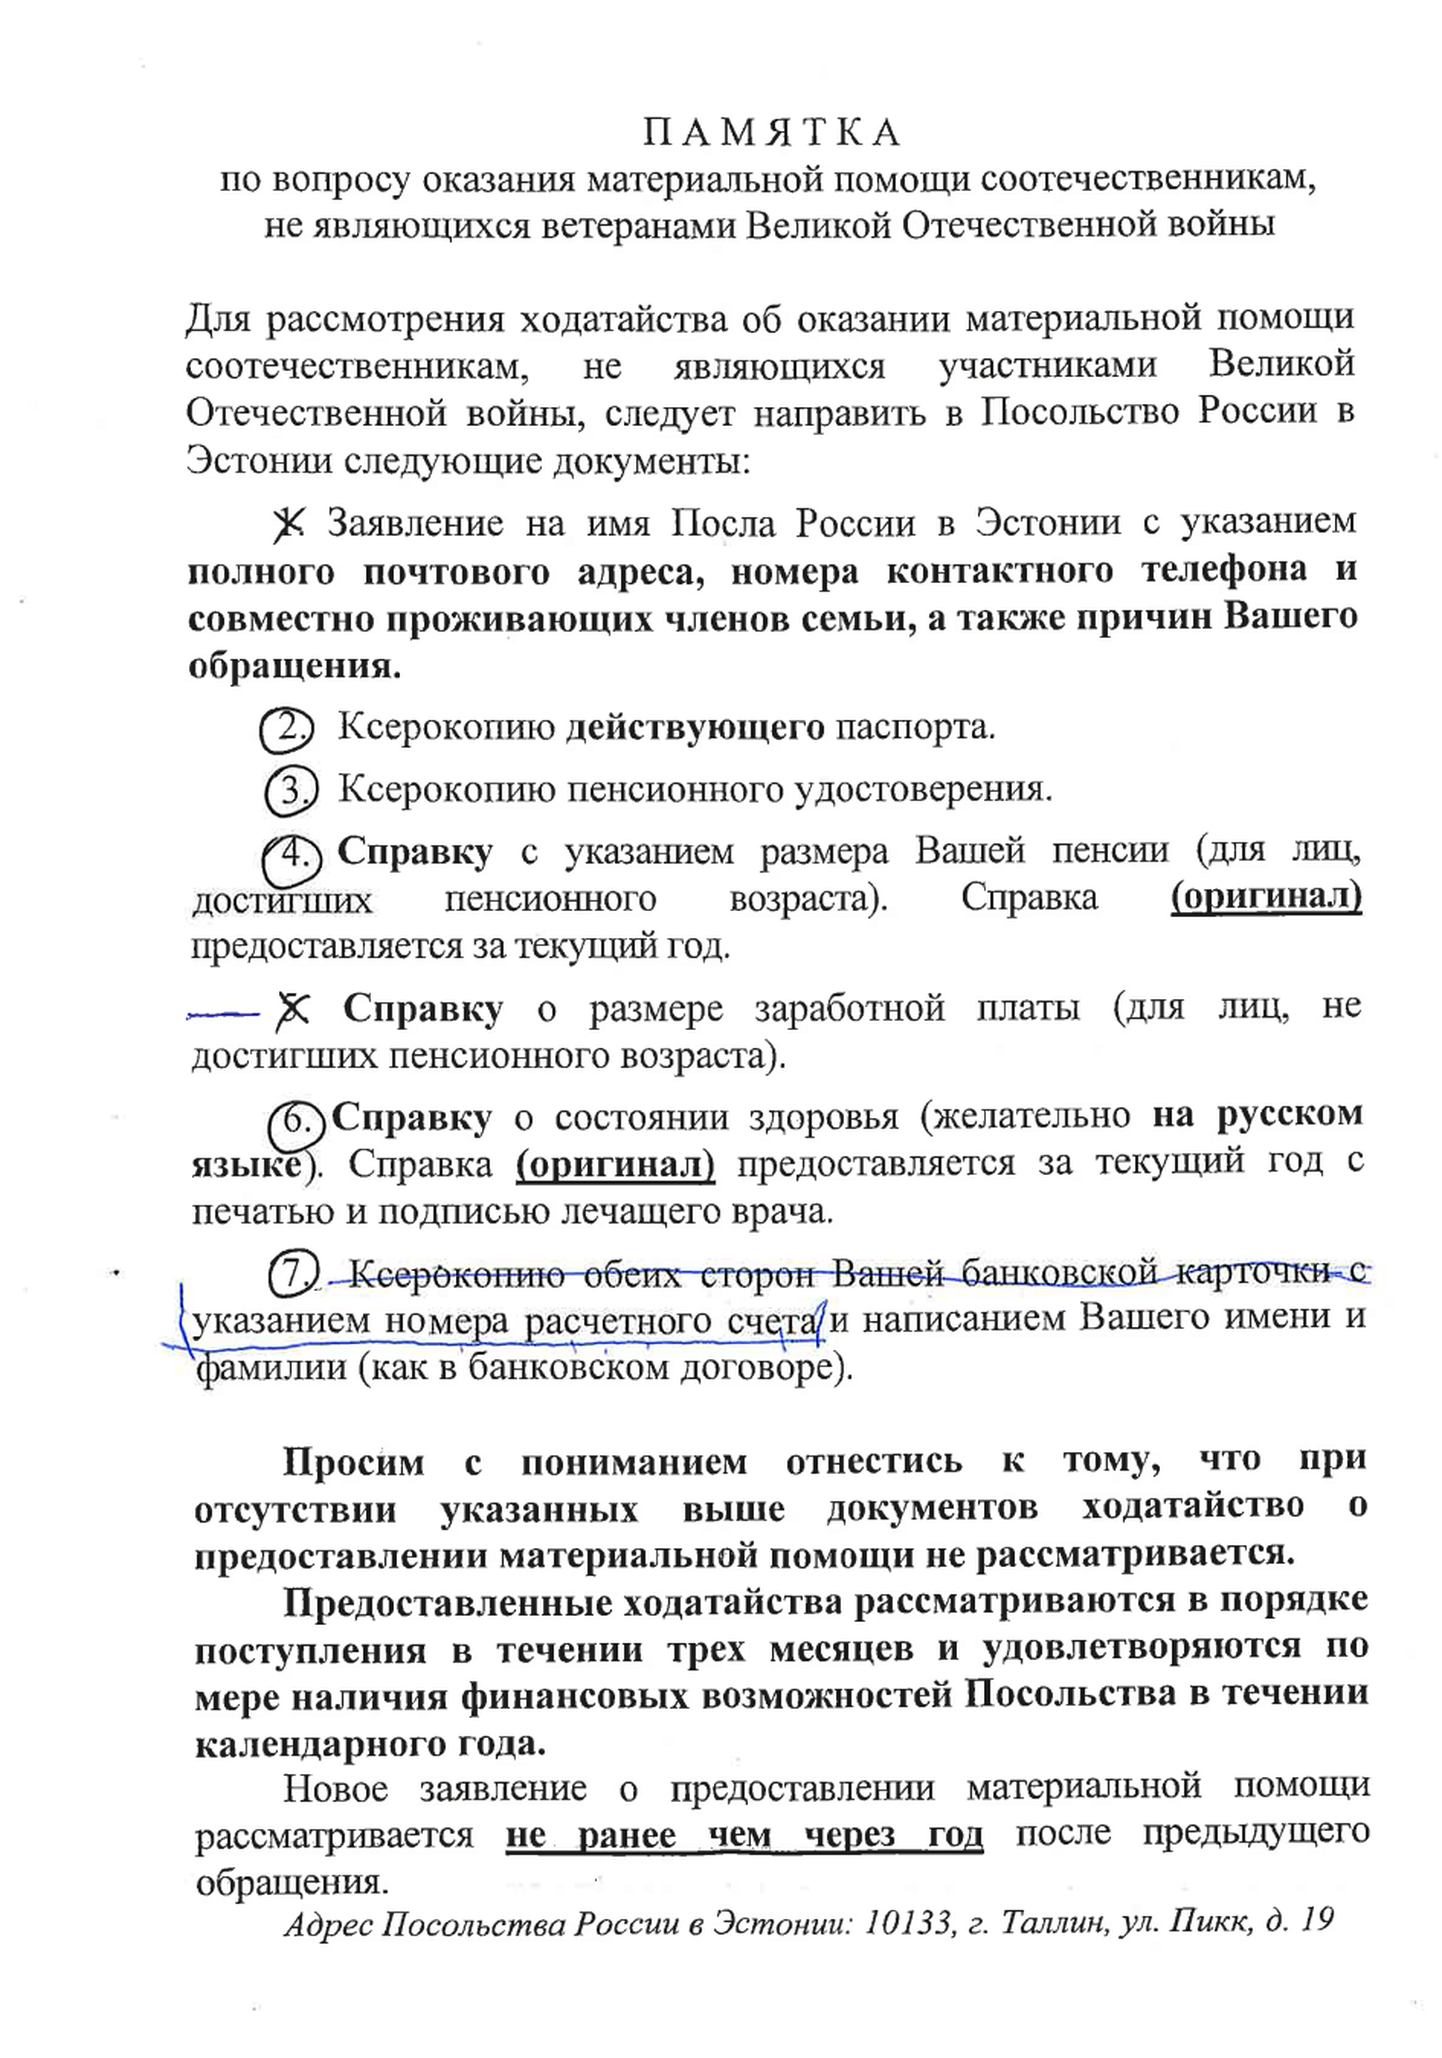 Тот самый устаревший вариант документа, который посольство России в Эстонии выдавало нуждающимся в помощи соотечественникам.